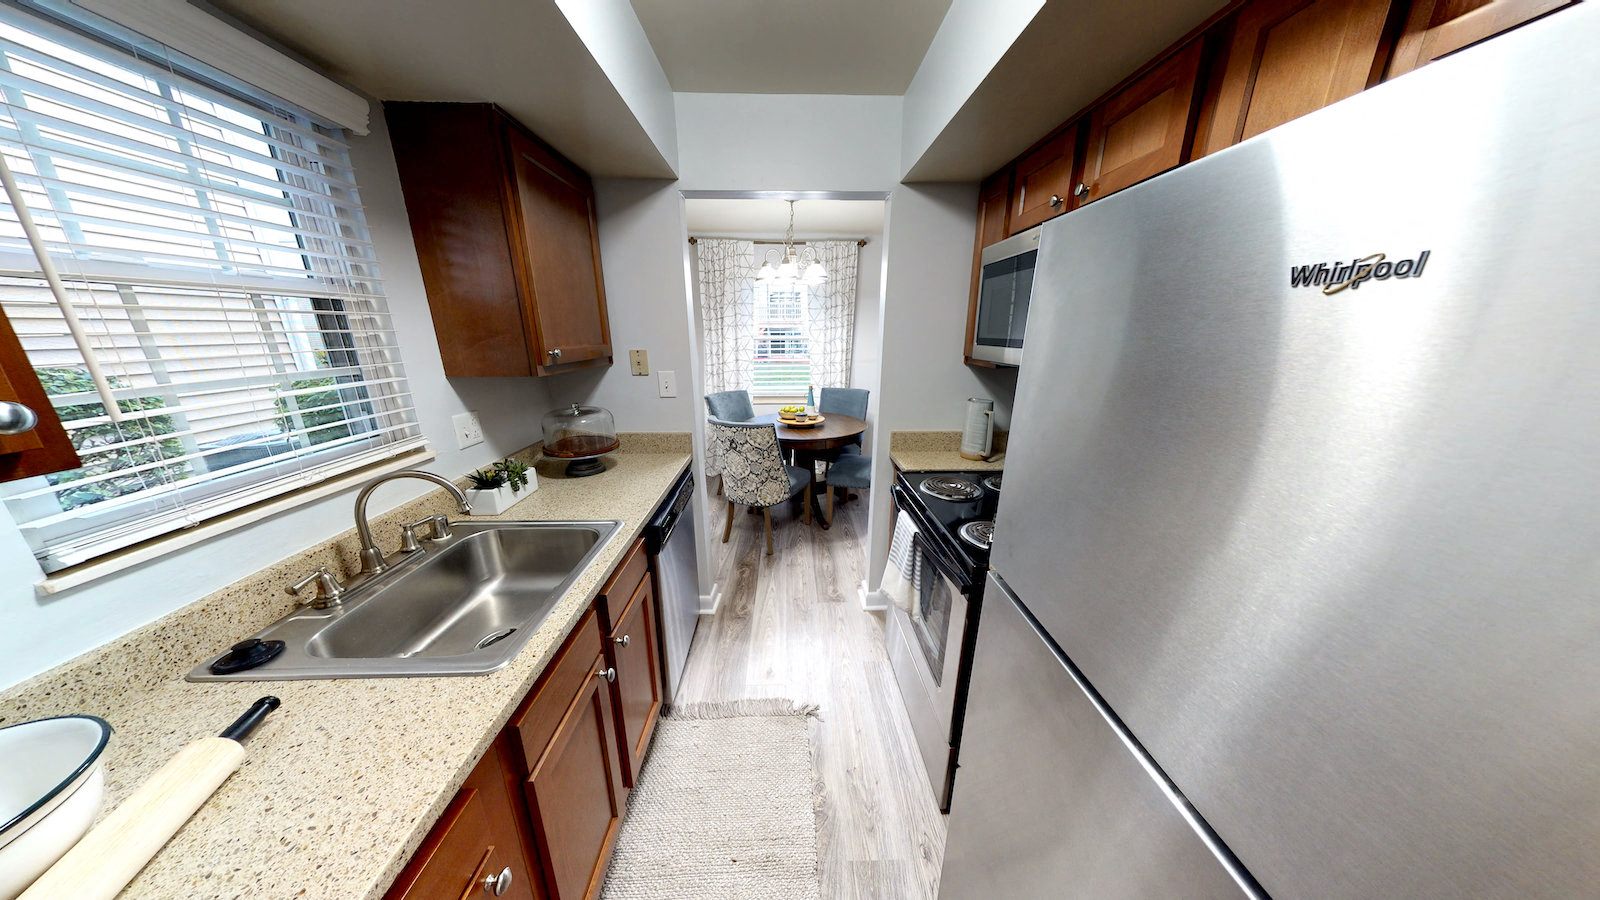 Kitchen with appliances at Merrick Place, Lexington, KY, 40502